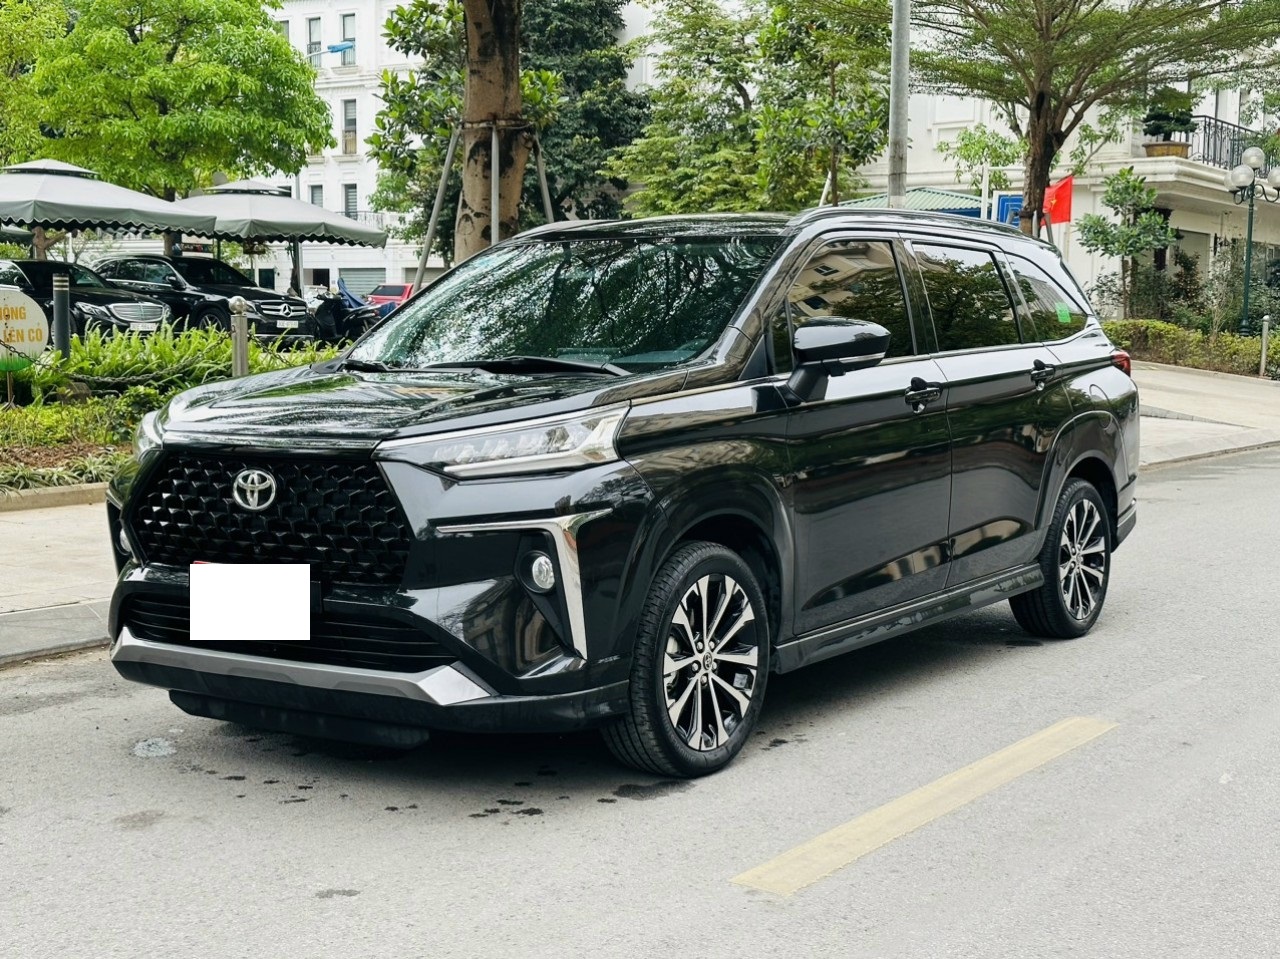 Toyota Veloz Cross bộc lộ ưu nhược điểm sau 1 năm bán ra tại Việt Nam - Ảnh 1.